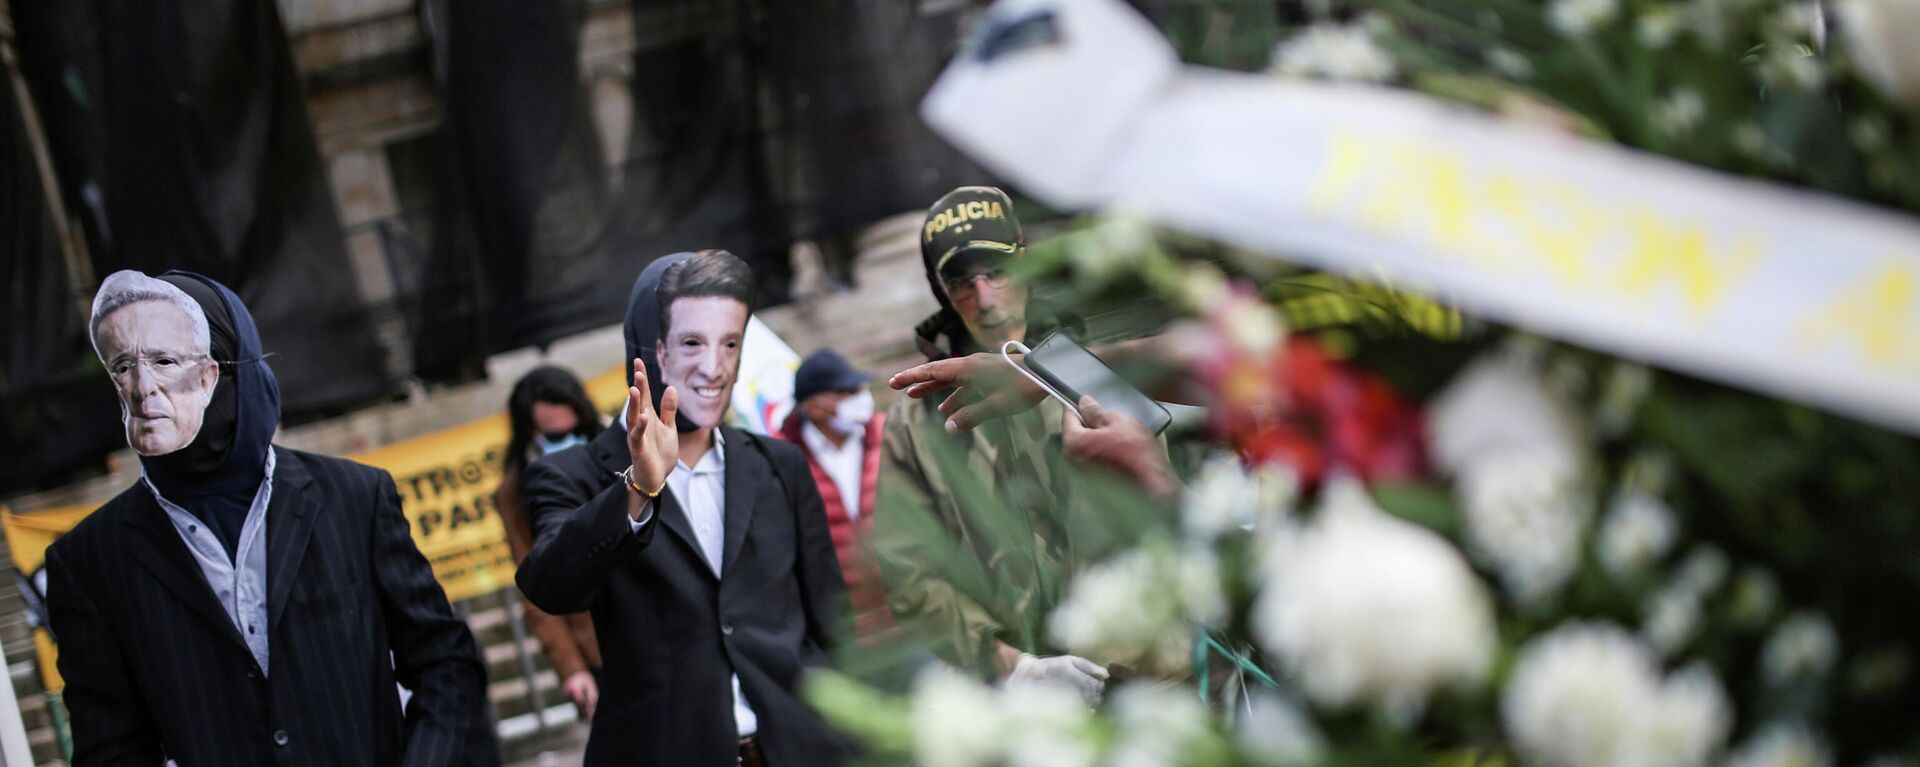 Los manifestantes usan máscaras que representan al expresidente de Colombia, Álvaro Uribe, al ministro de Defensa, Diego Molano, y al director de la Policía Nacional, general Jorge Luis Vargas - Sputnik Mundo, 1920, 26.05.2021